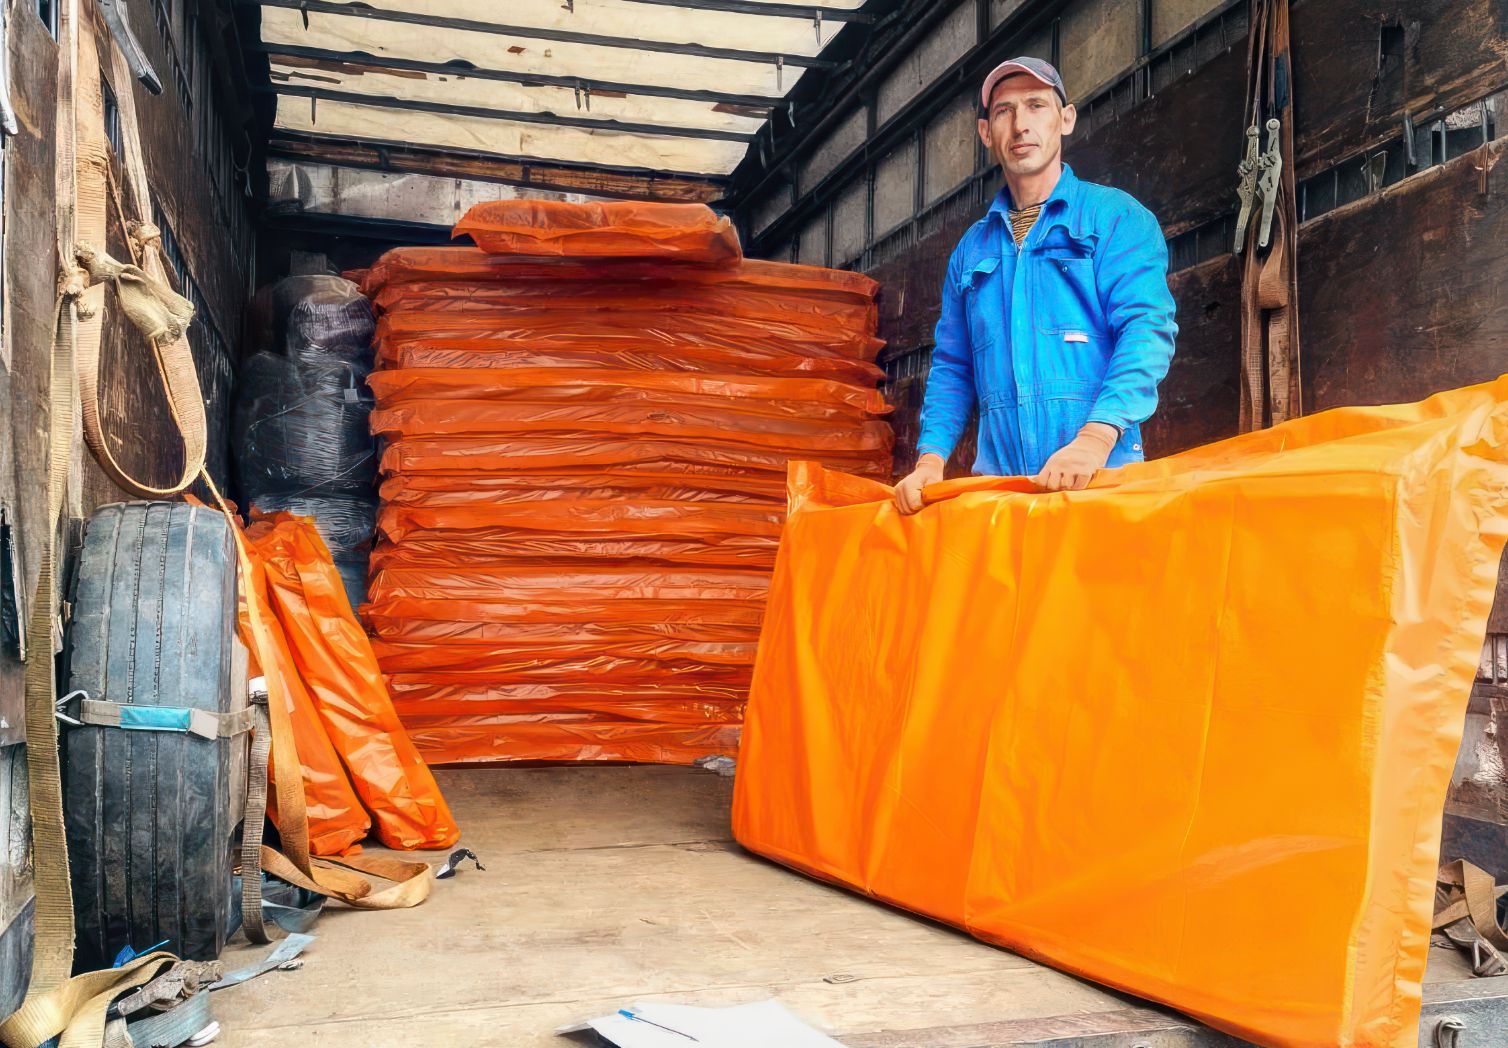 Foto: Ein Mann steht im Laderaum eines Lkws und hält eine orangefarbene Matratze in der Hand. Hinter ihm sind weitere Matratzen gestapelt.